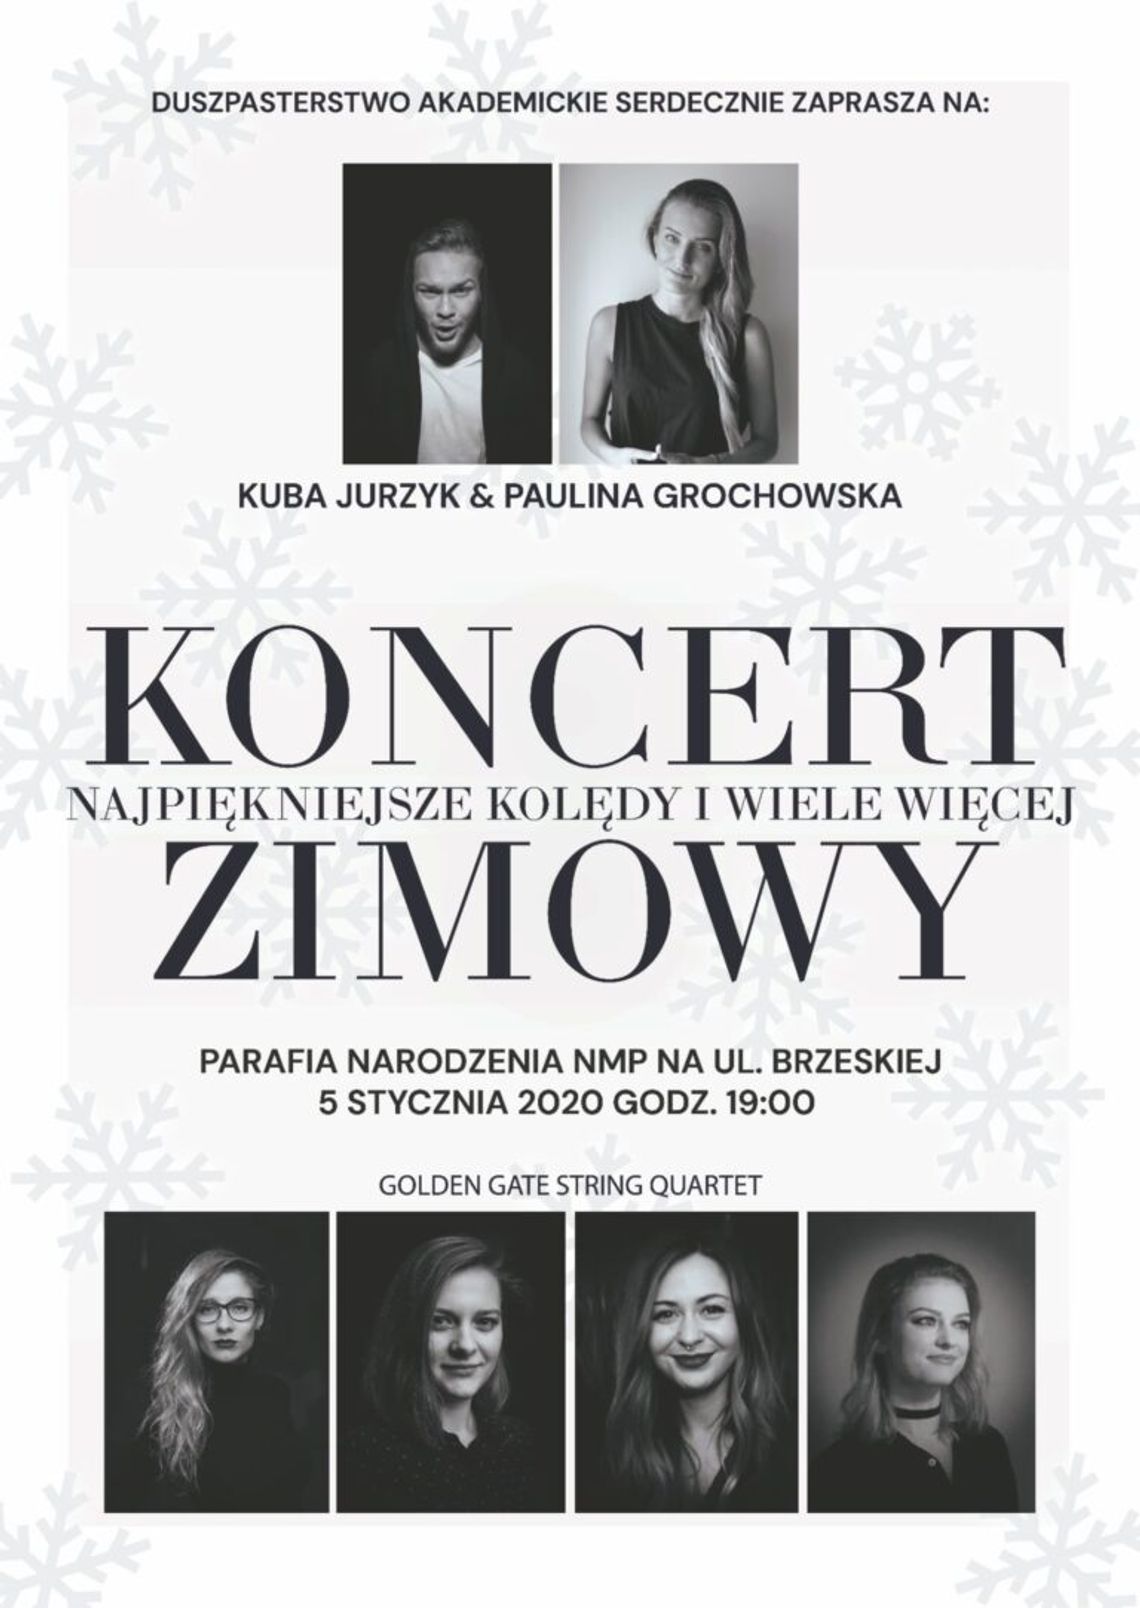 "Koncert zimowy - najpiękniejsze kolędy i wiele więcej" w Białej Podlaskiej